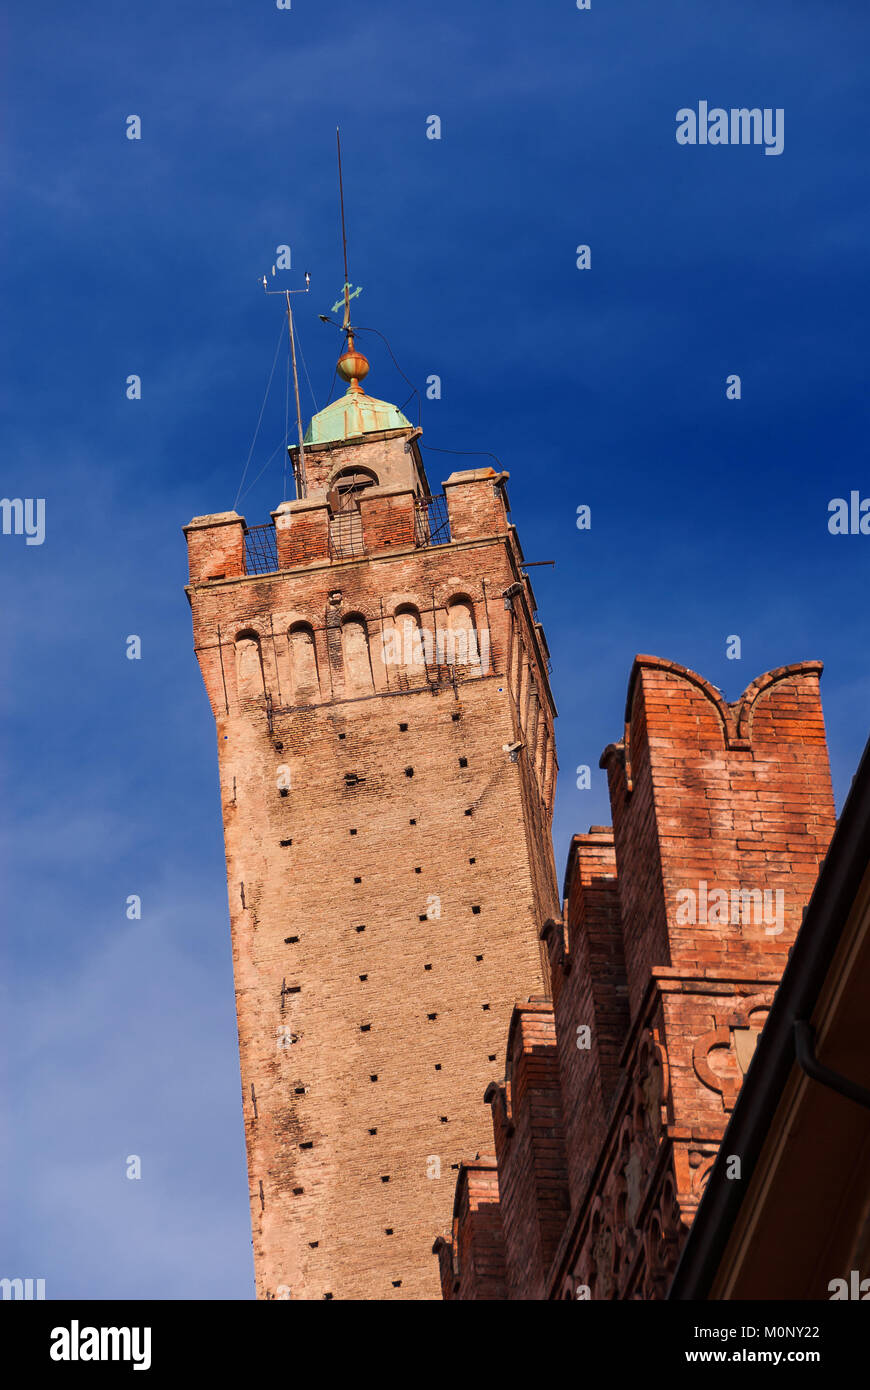 Inclinazione medievale Torre degli Asinelli, la piu' alta torre in Bologna e il simbolo della città, eretto alla fine del XII secolo Foto Stock